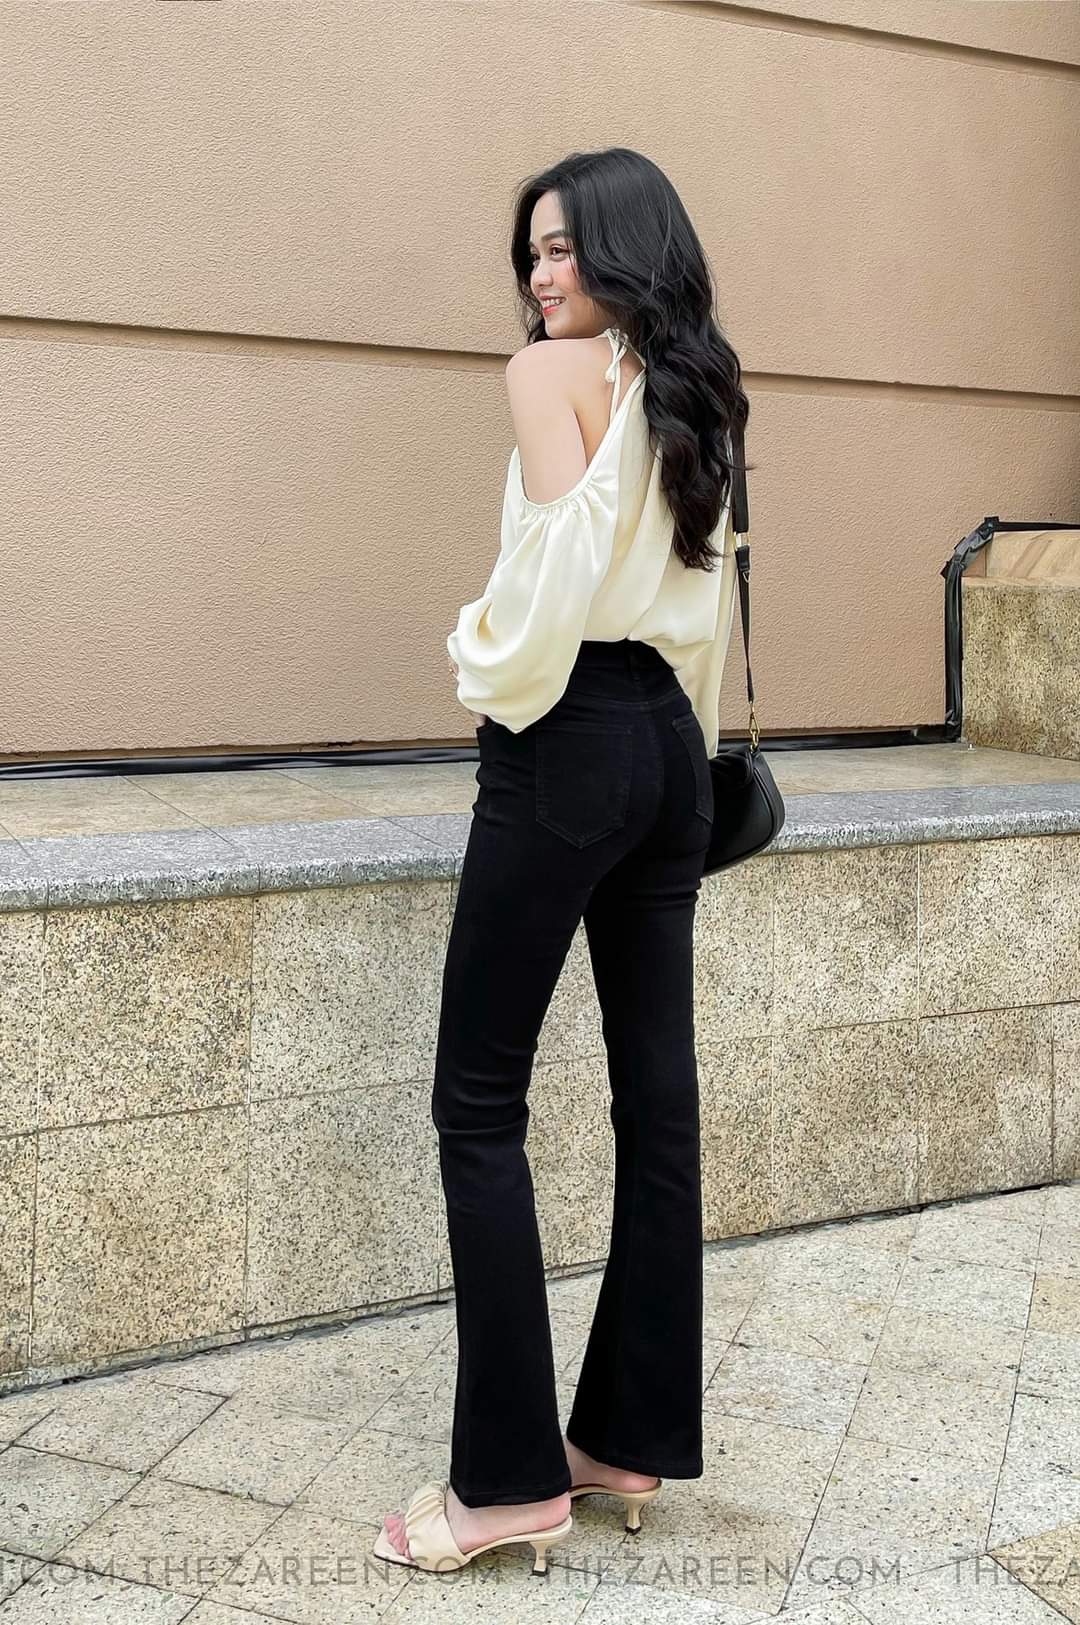 Quần jeans nữ ống loe dài màu đen